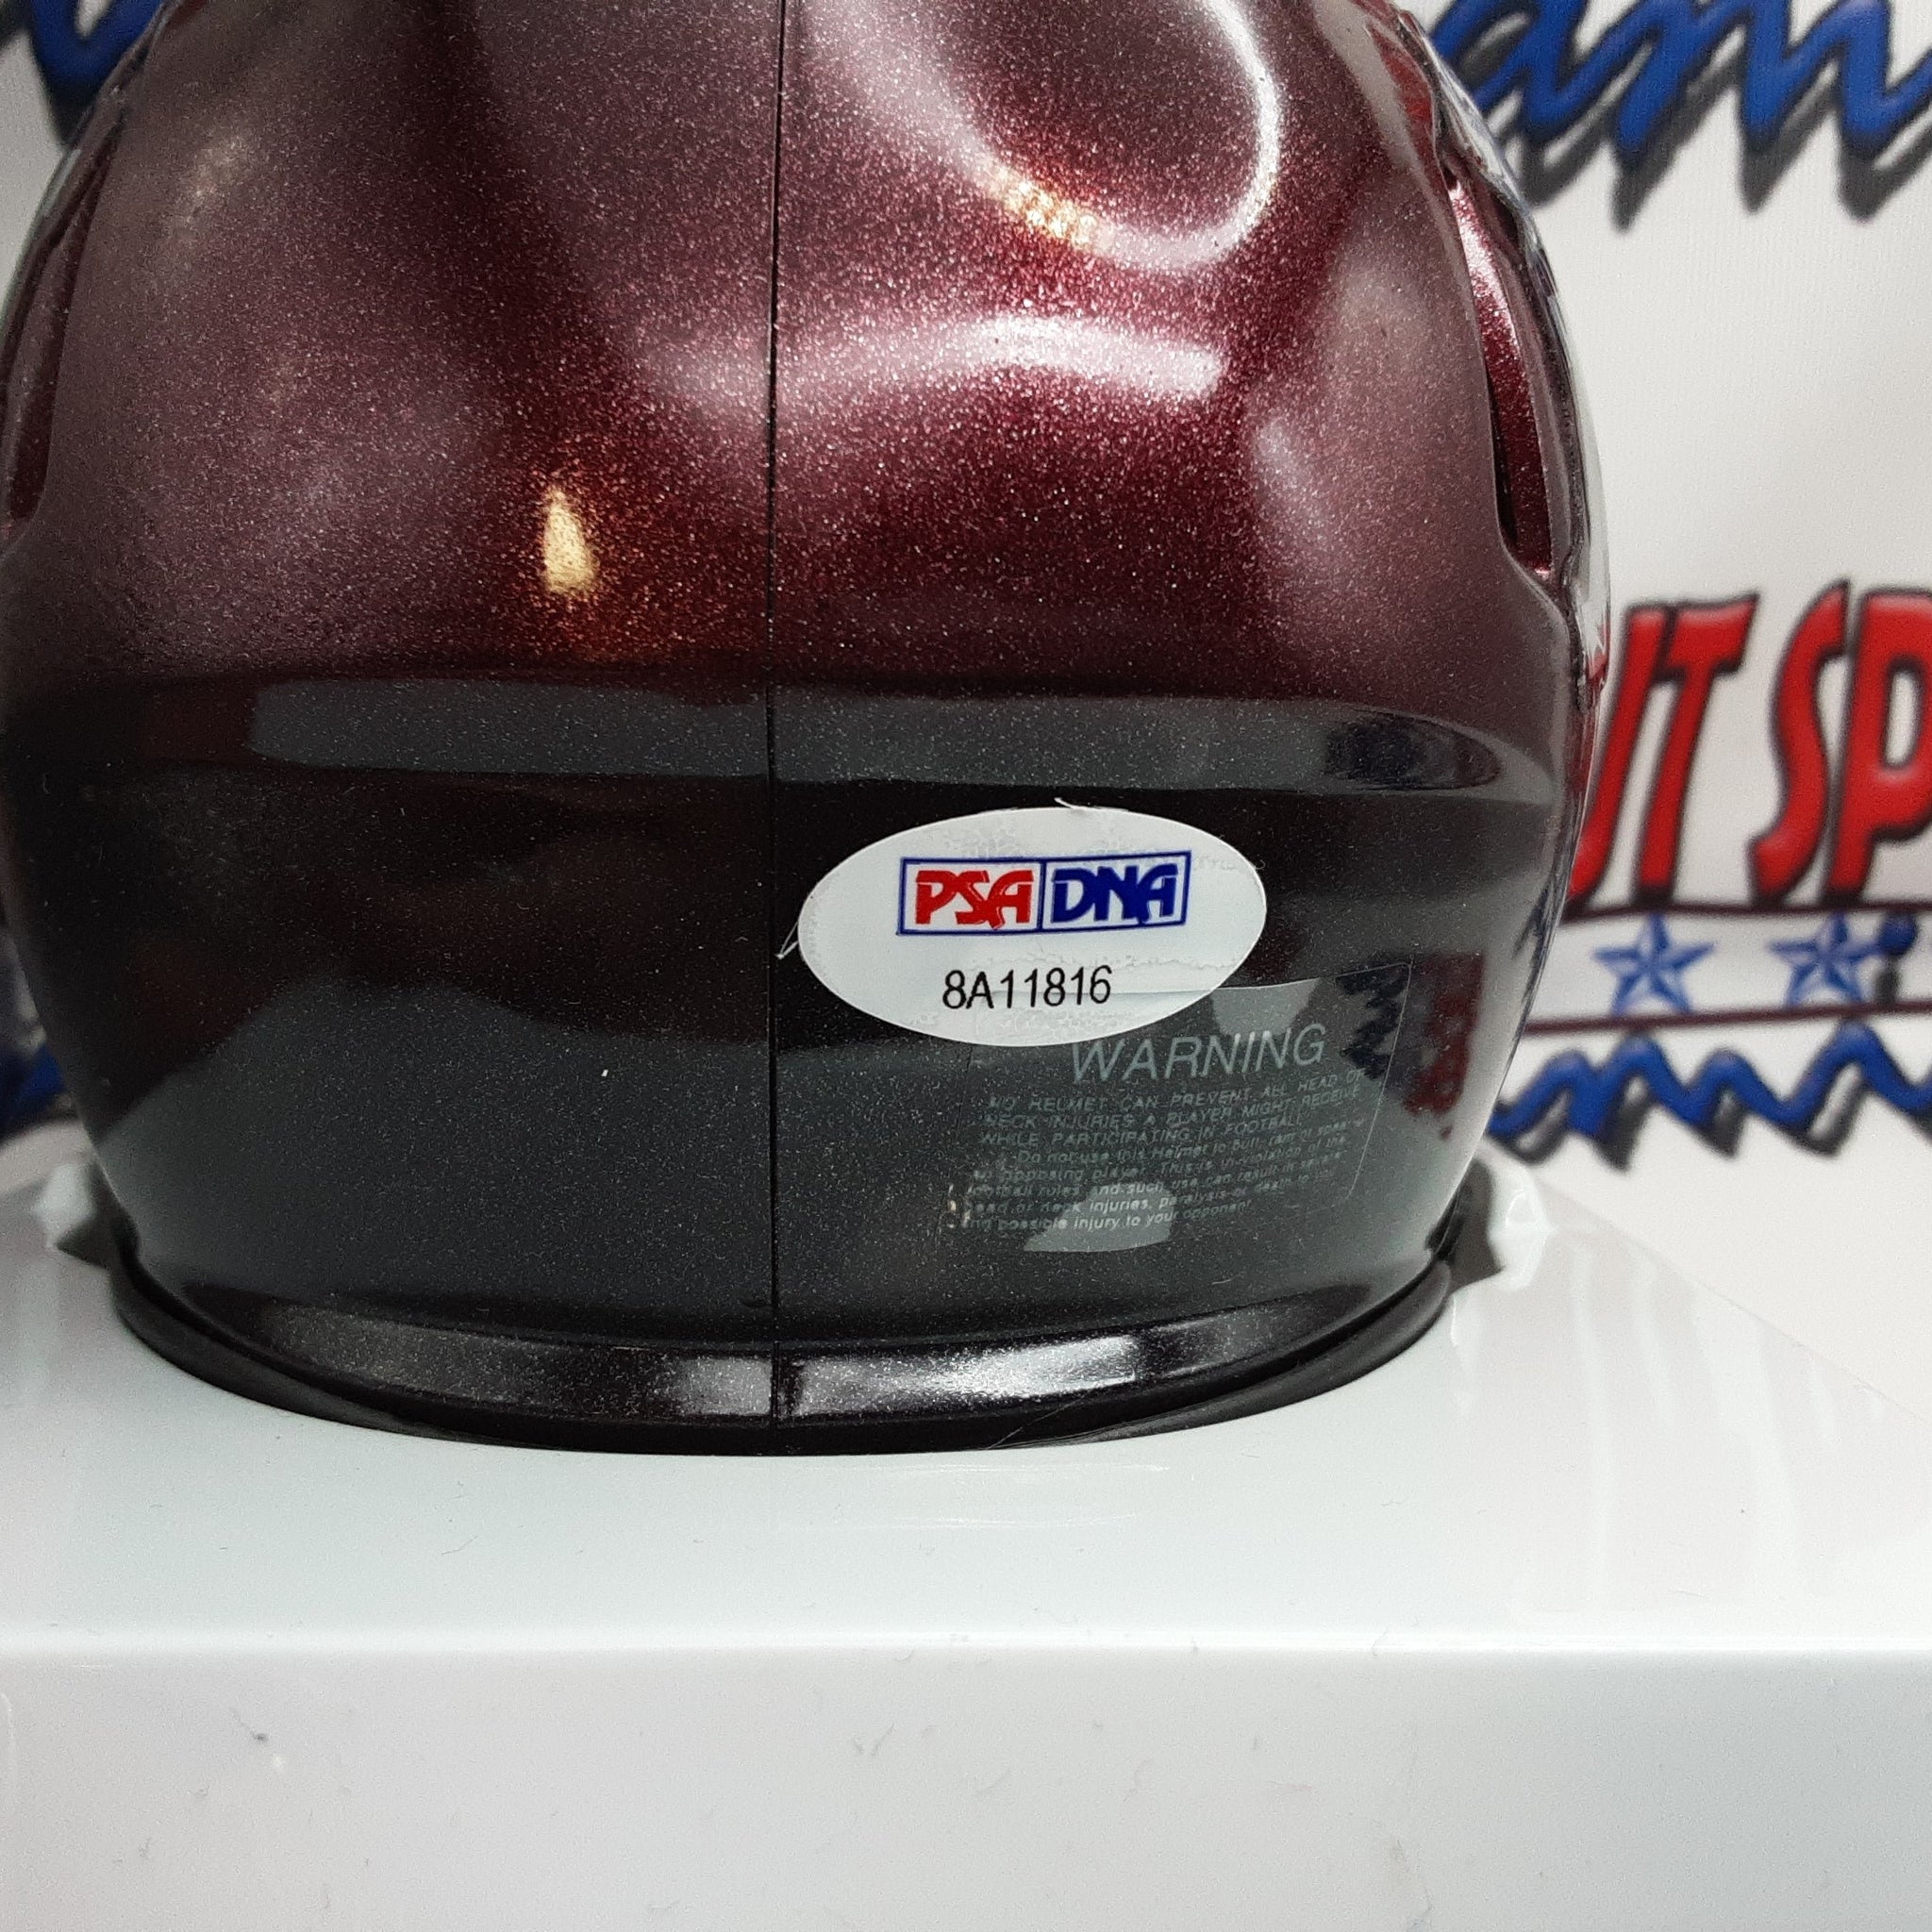 Mike Evans Authentic Signed Autographed Mini Helmet PSA